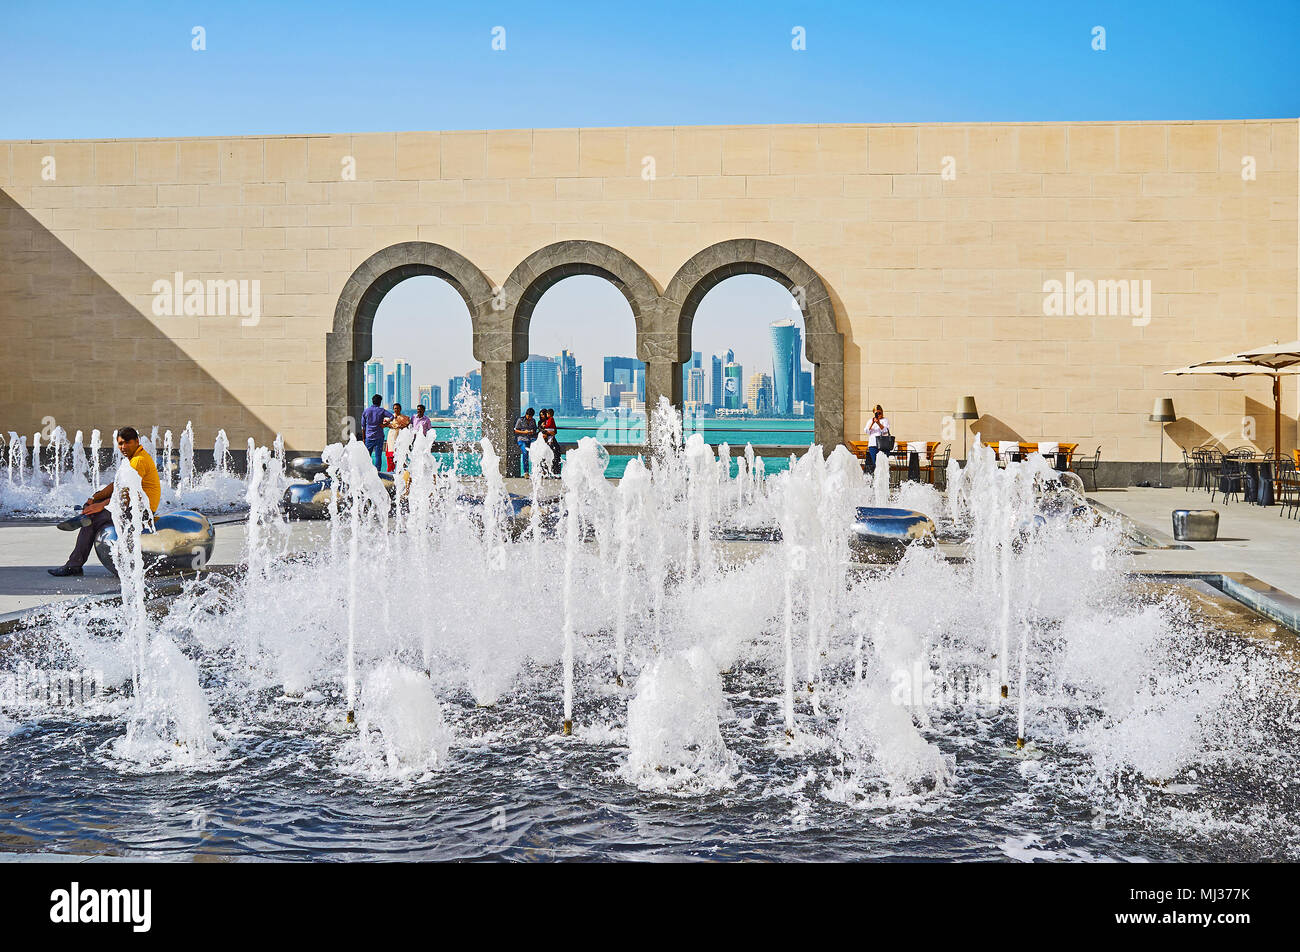 DOHA, Qatar - 13 febbraio 2018: Il scenografico cortile del museo di arte islamica è decorato con fontane, futuristico di panchine e finestre ad arco, openin Foto Stock